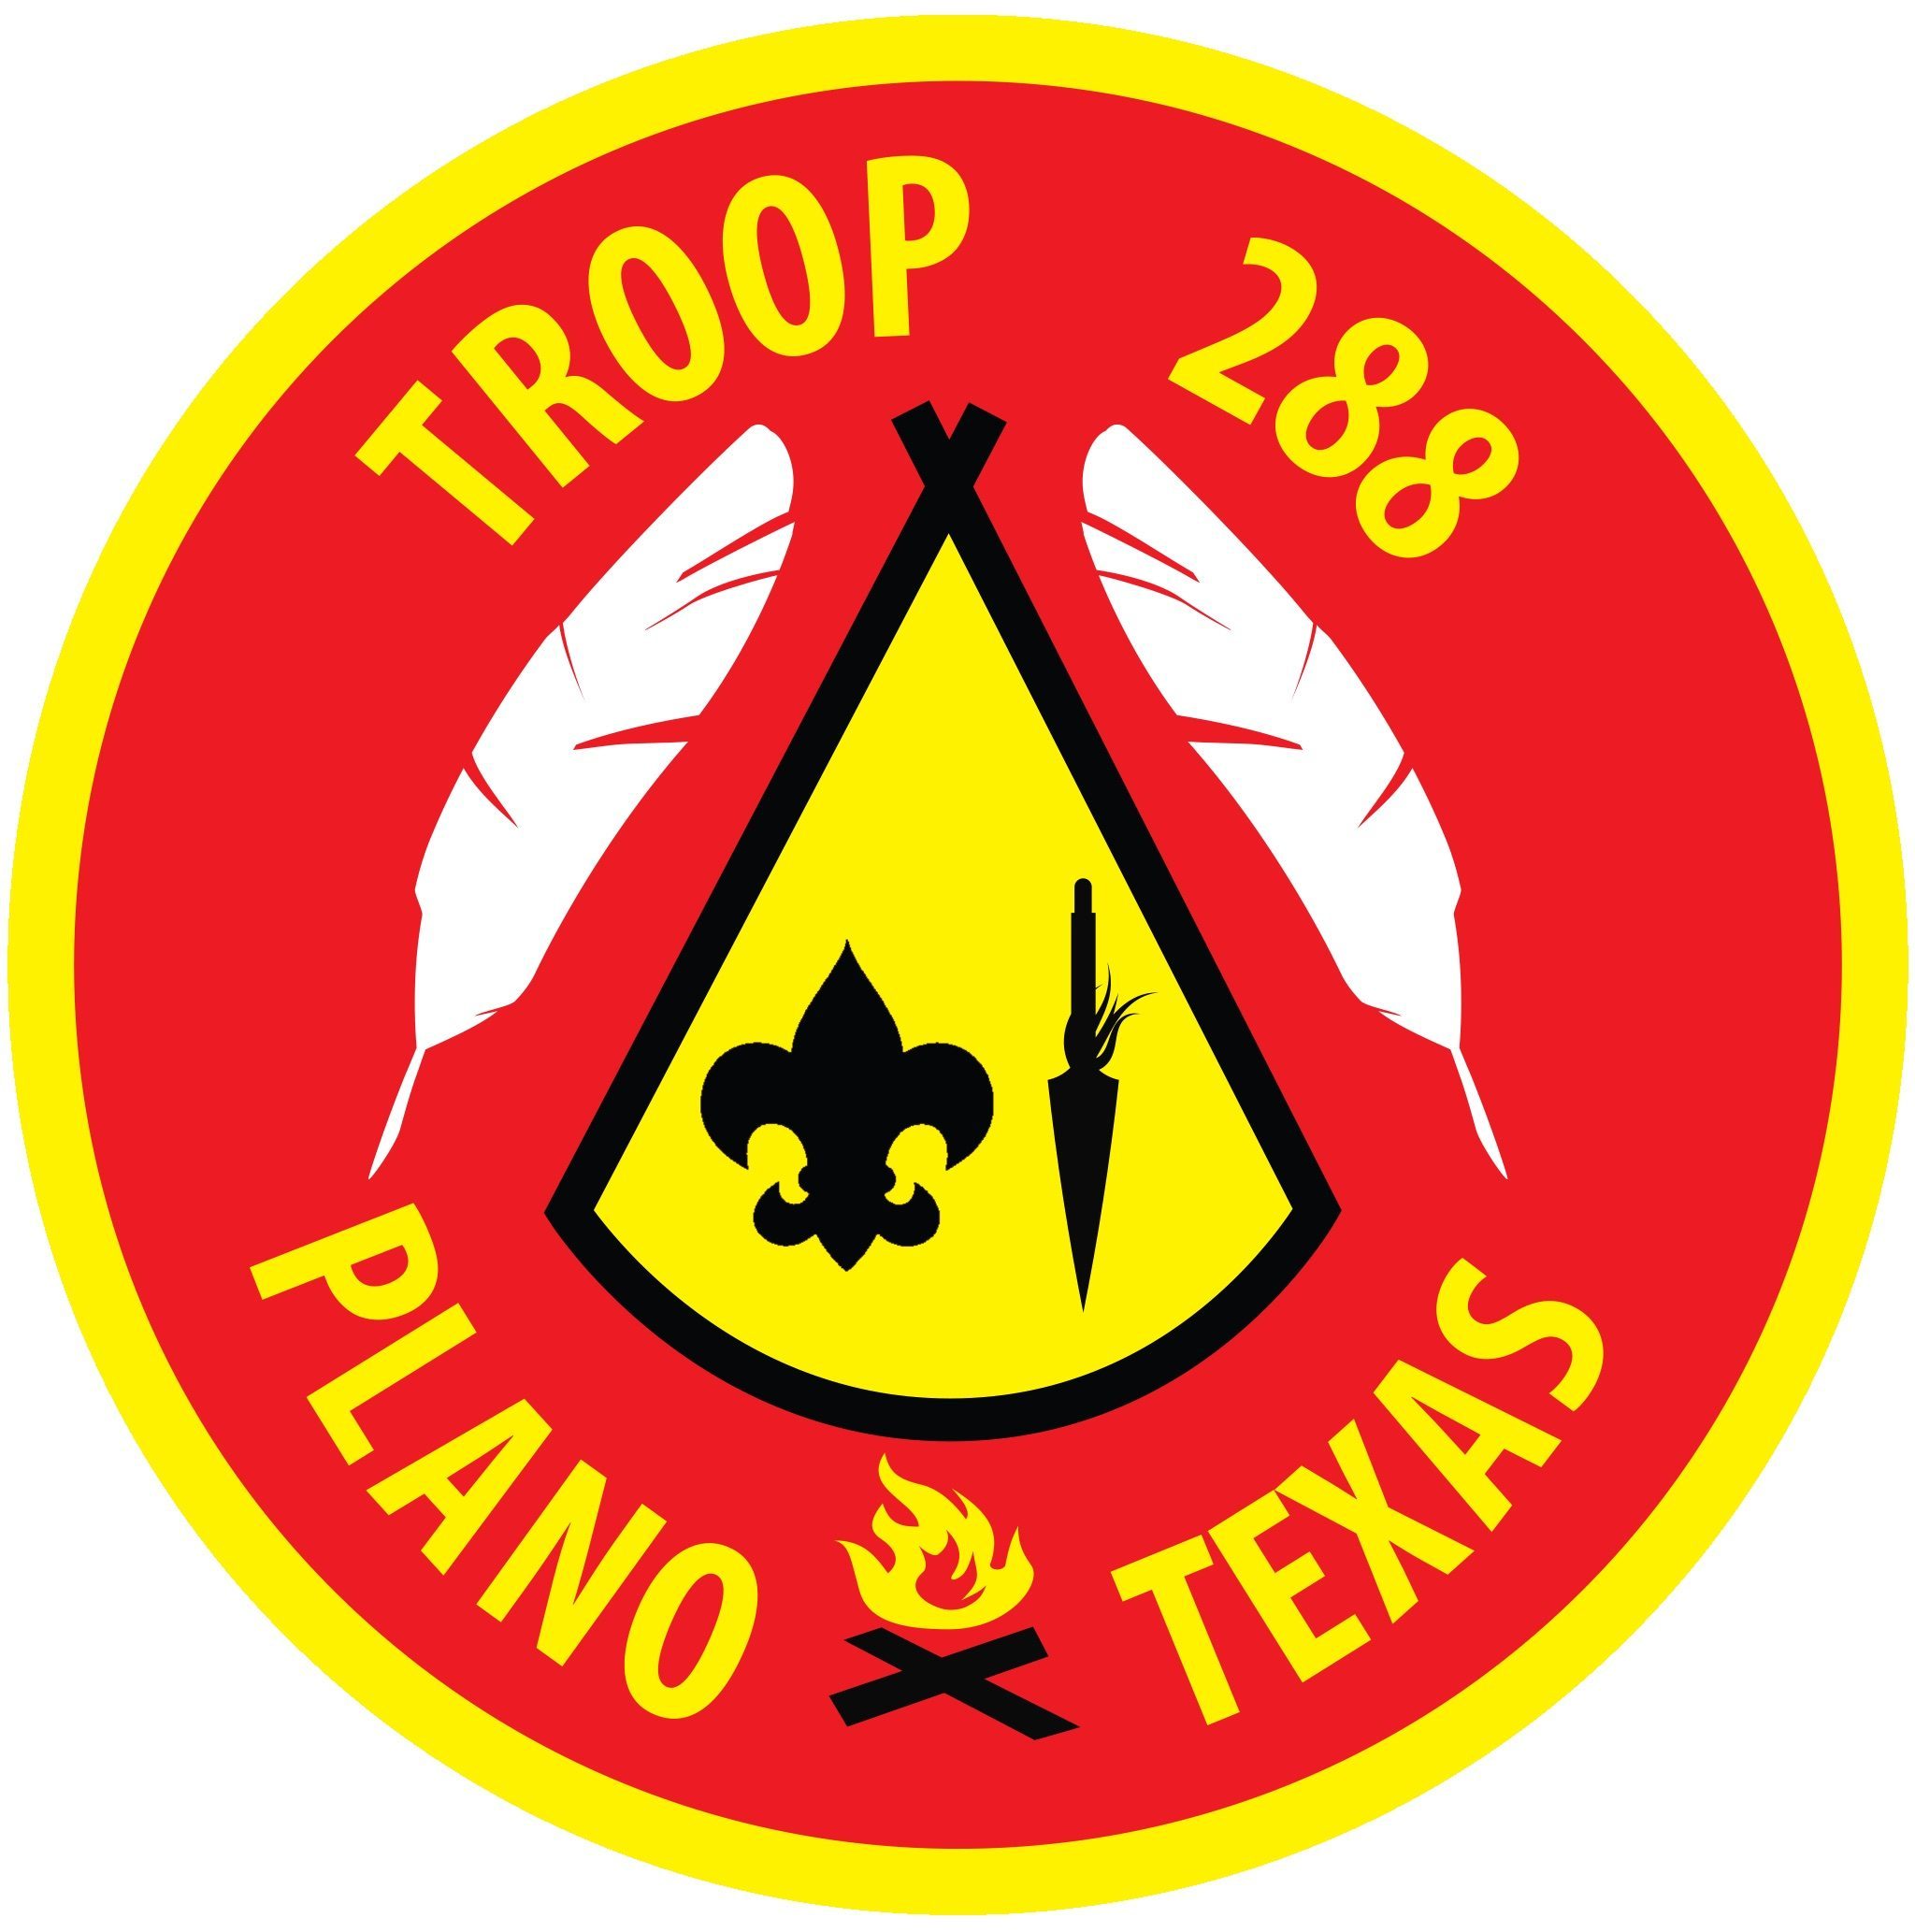 Troop 288 Plano, TX